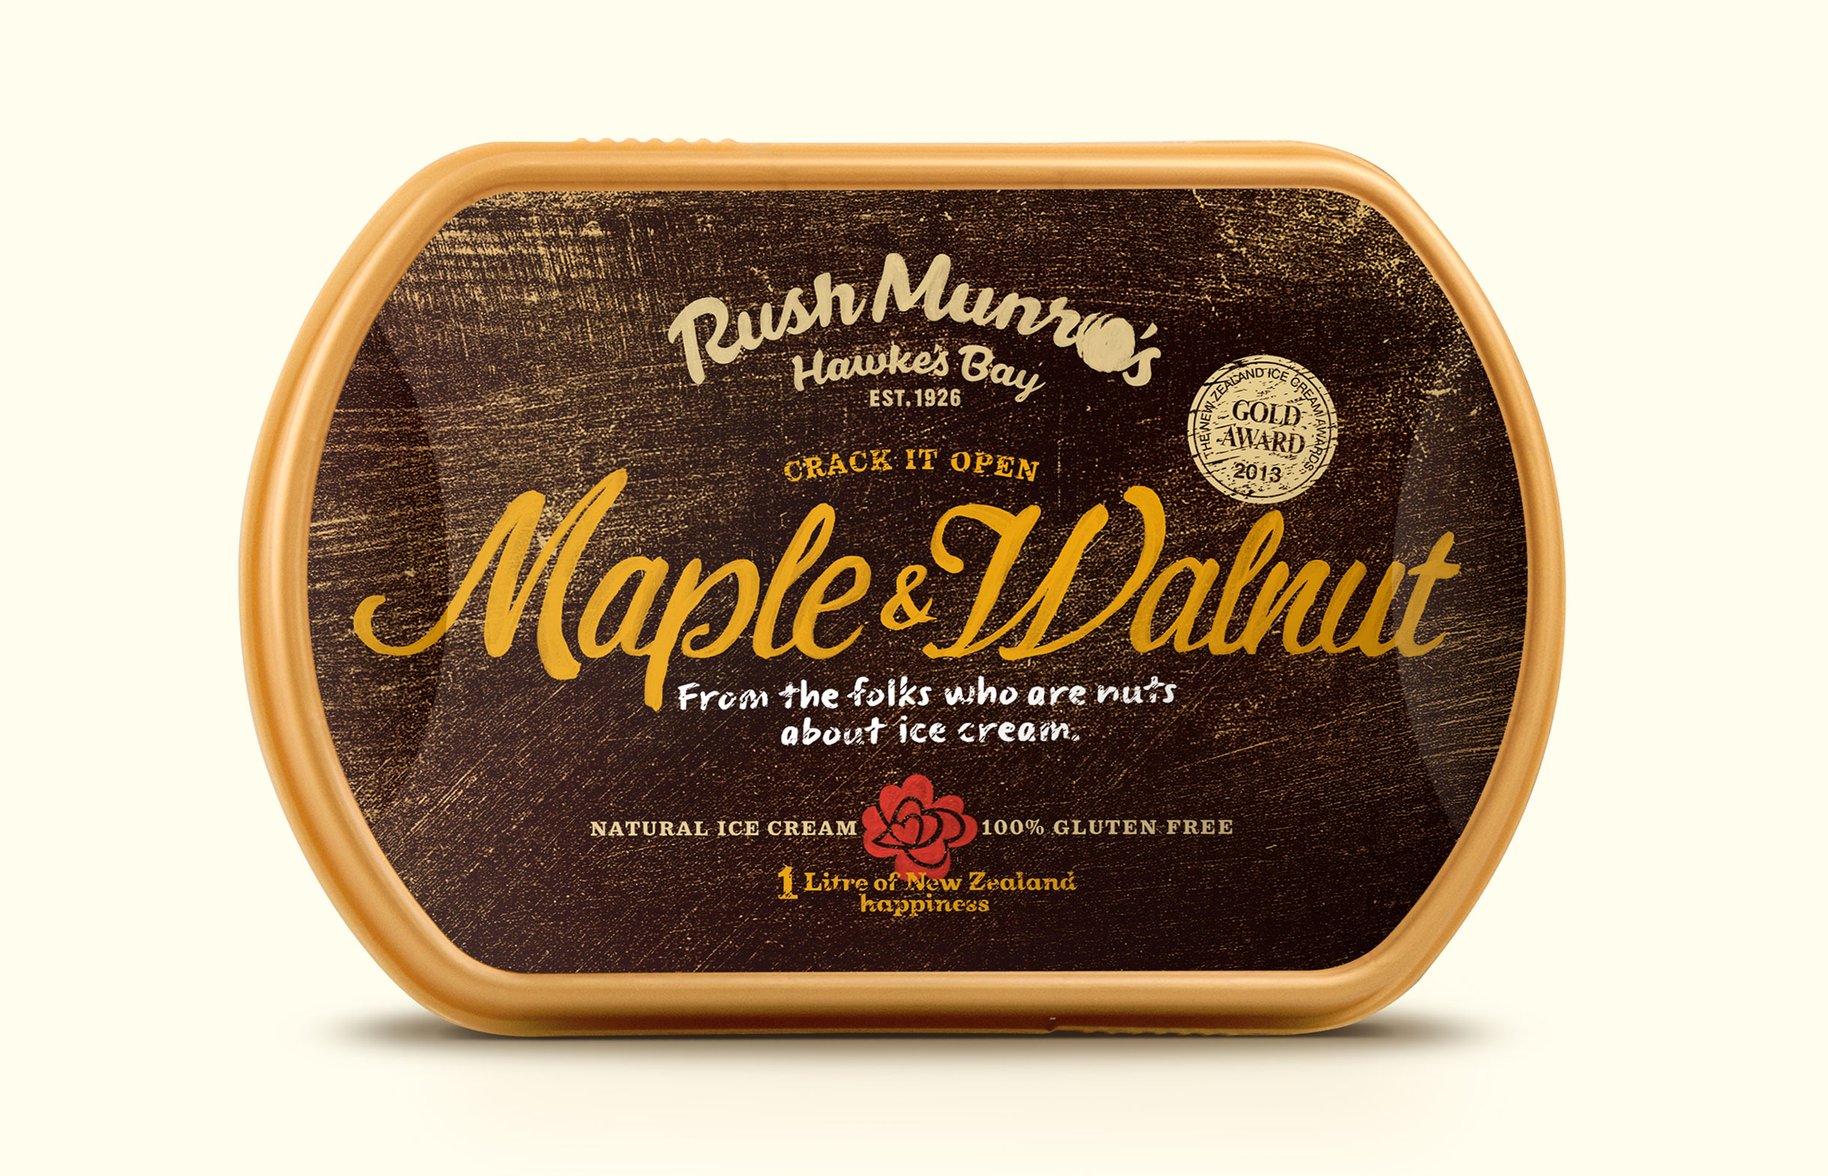 Rush Munro's maple walnut ice cream packaging 